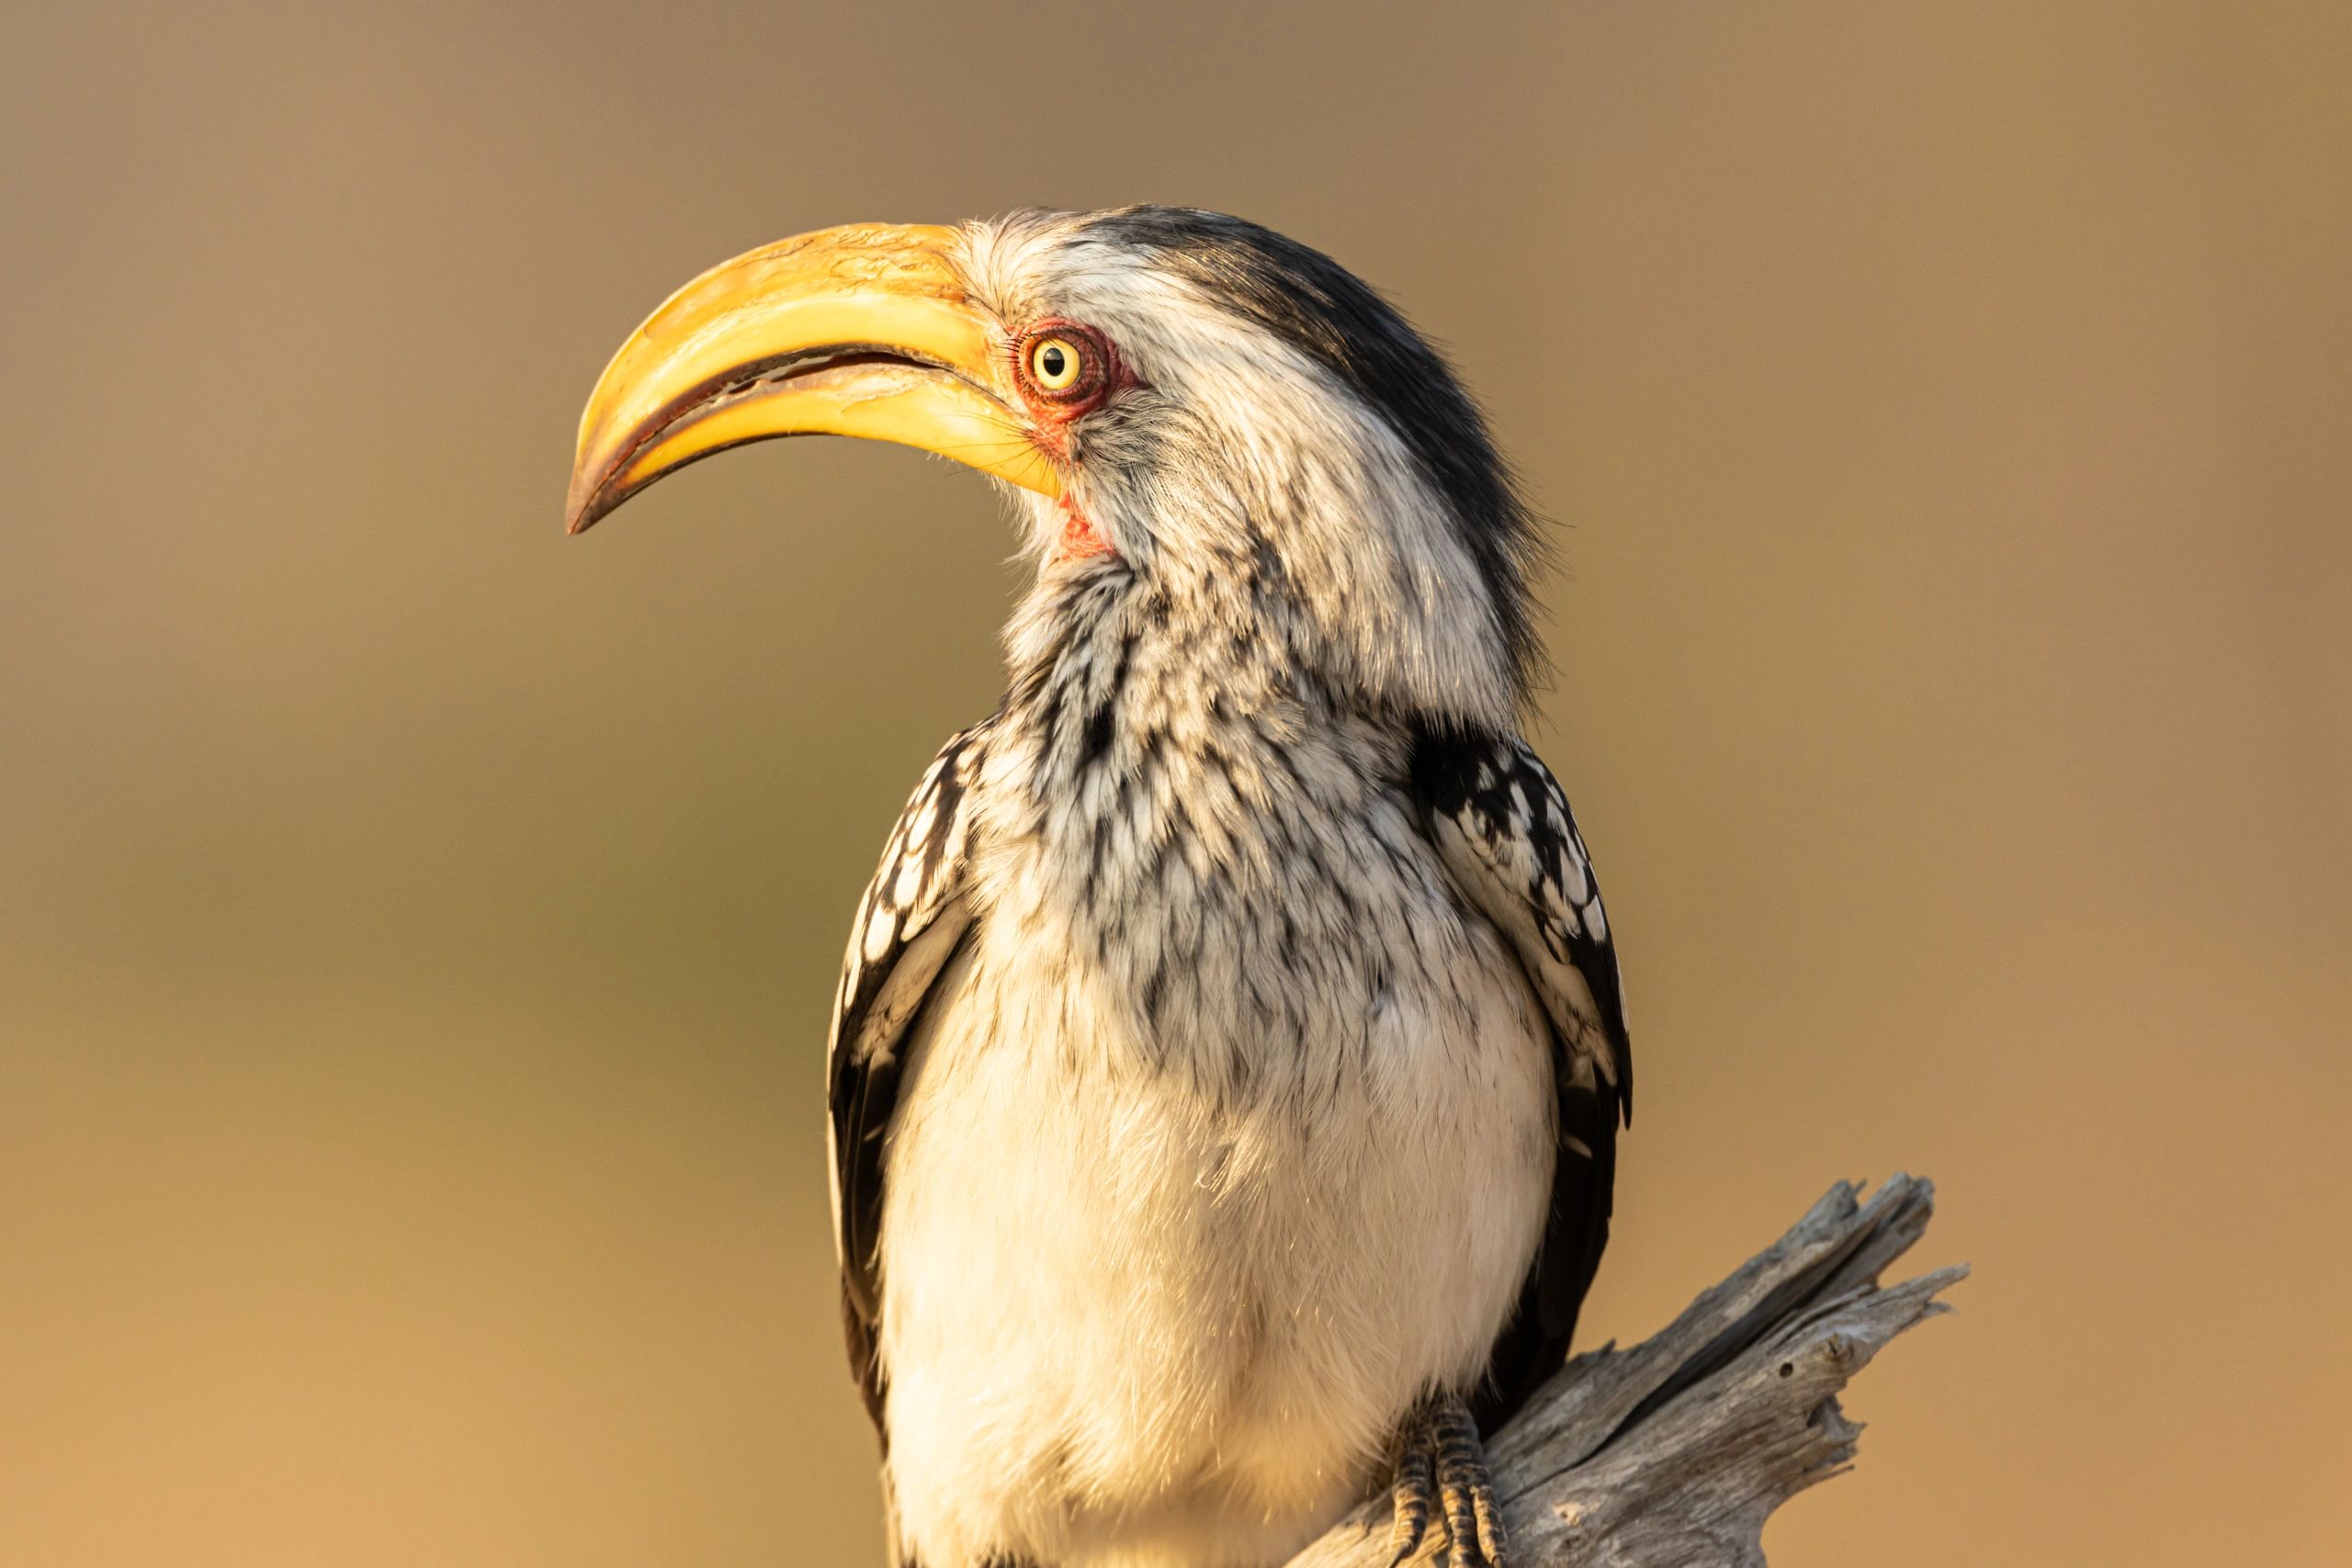 Banana Bird - South African yellow-billed hornbill